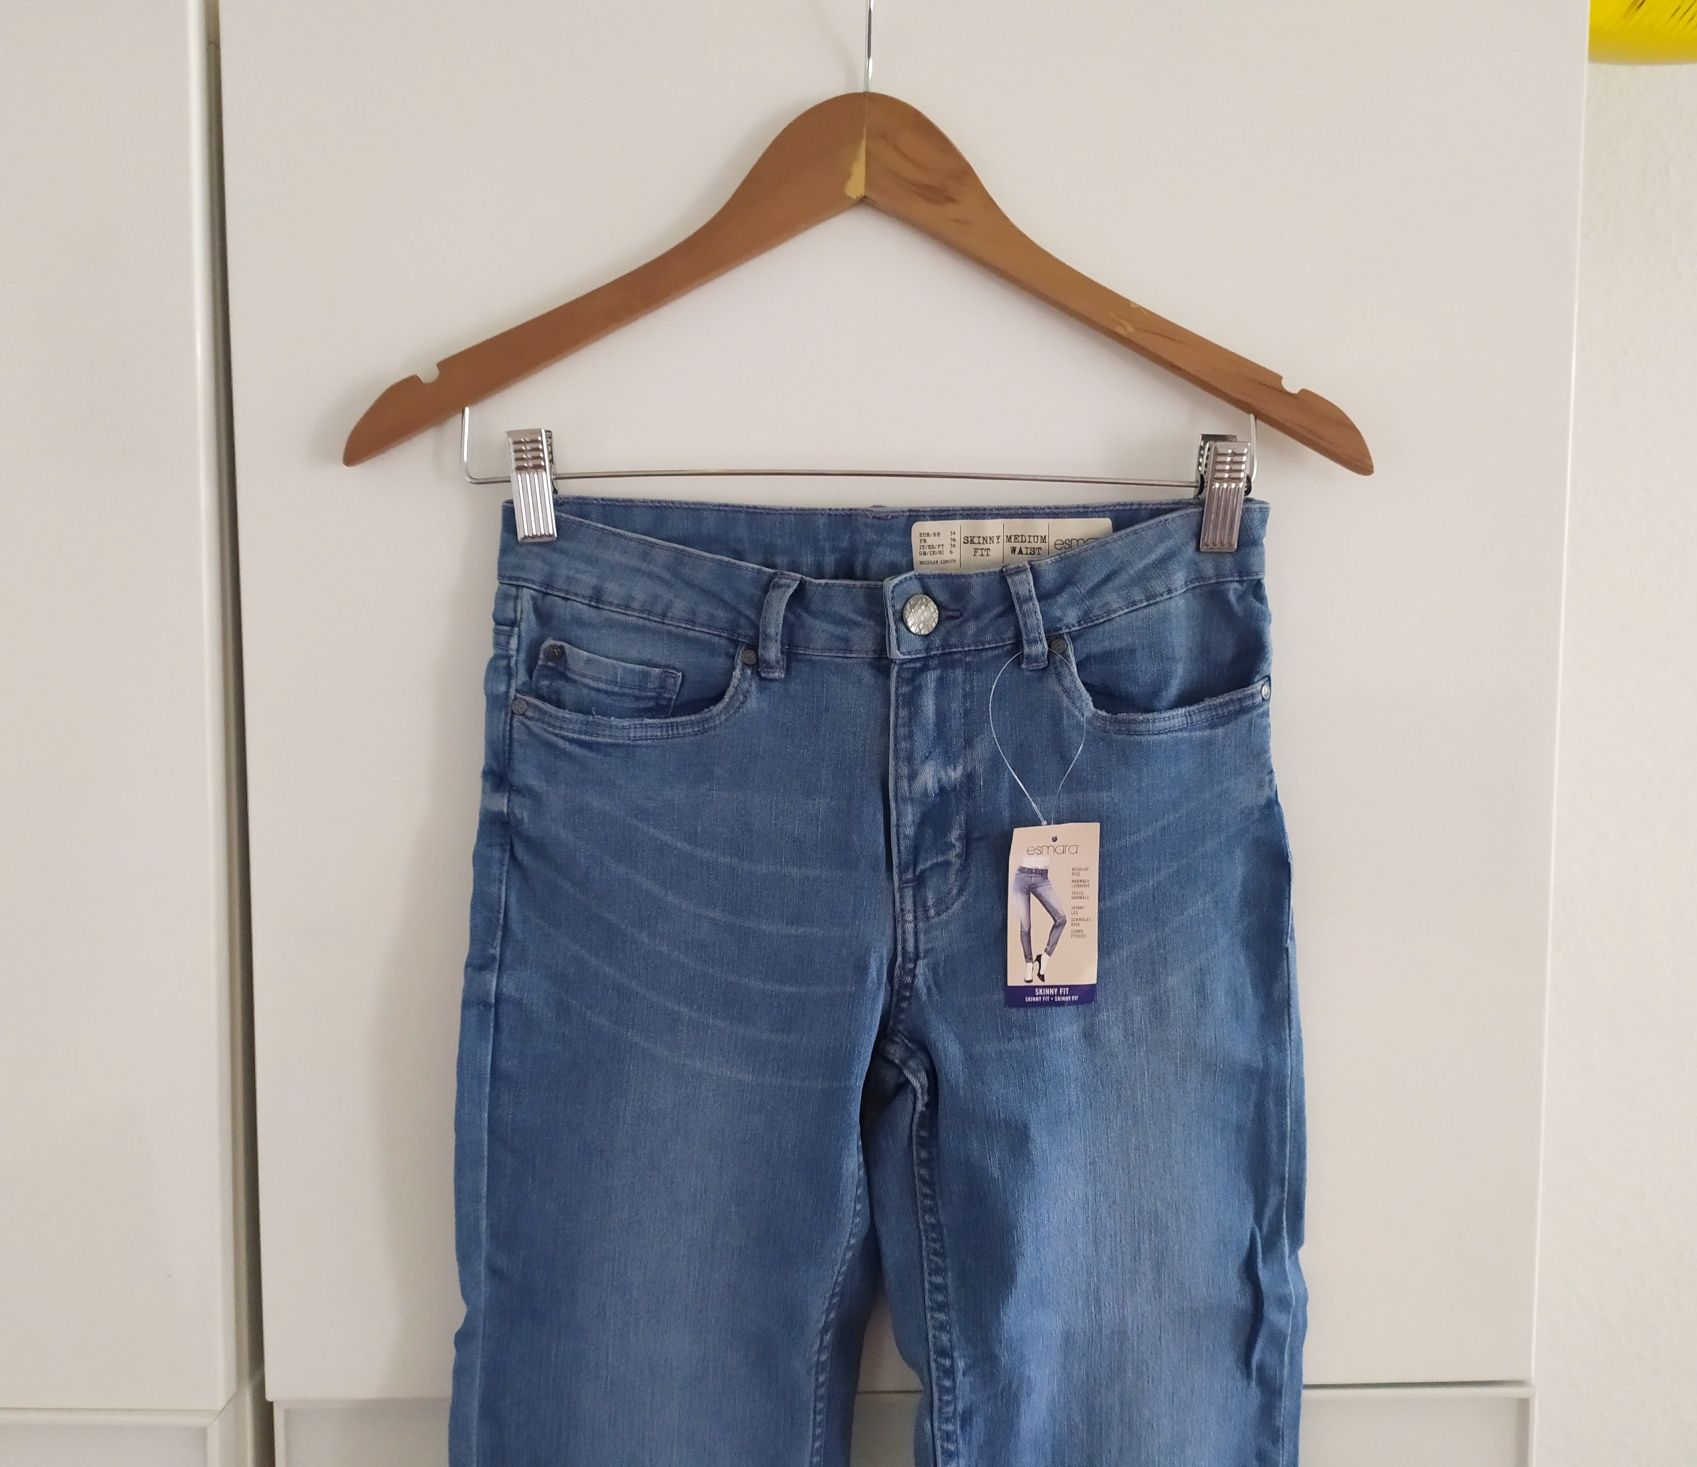 Nowe spodnie XS jeansowe dżinsy 34 S 36 jeansy niebieskie skinny fit